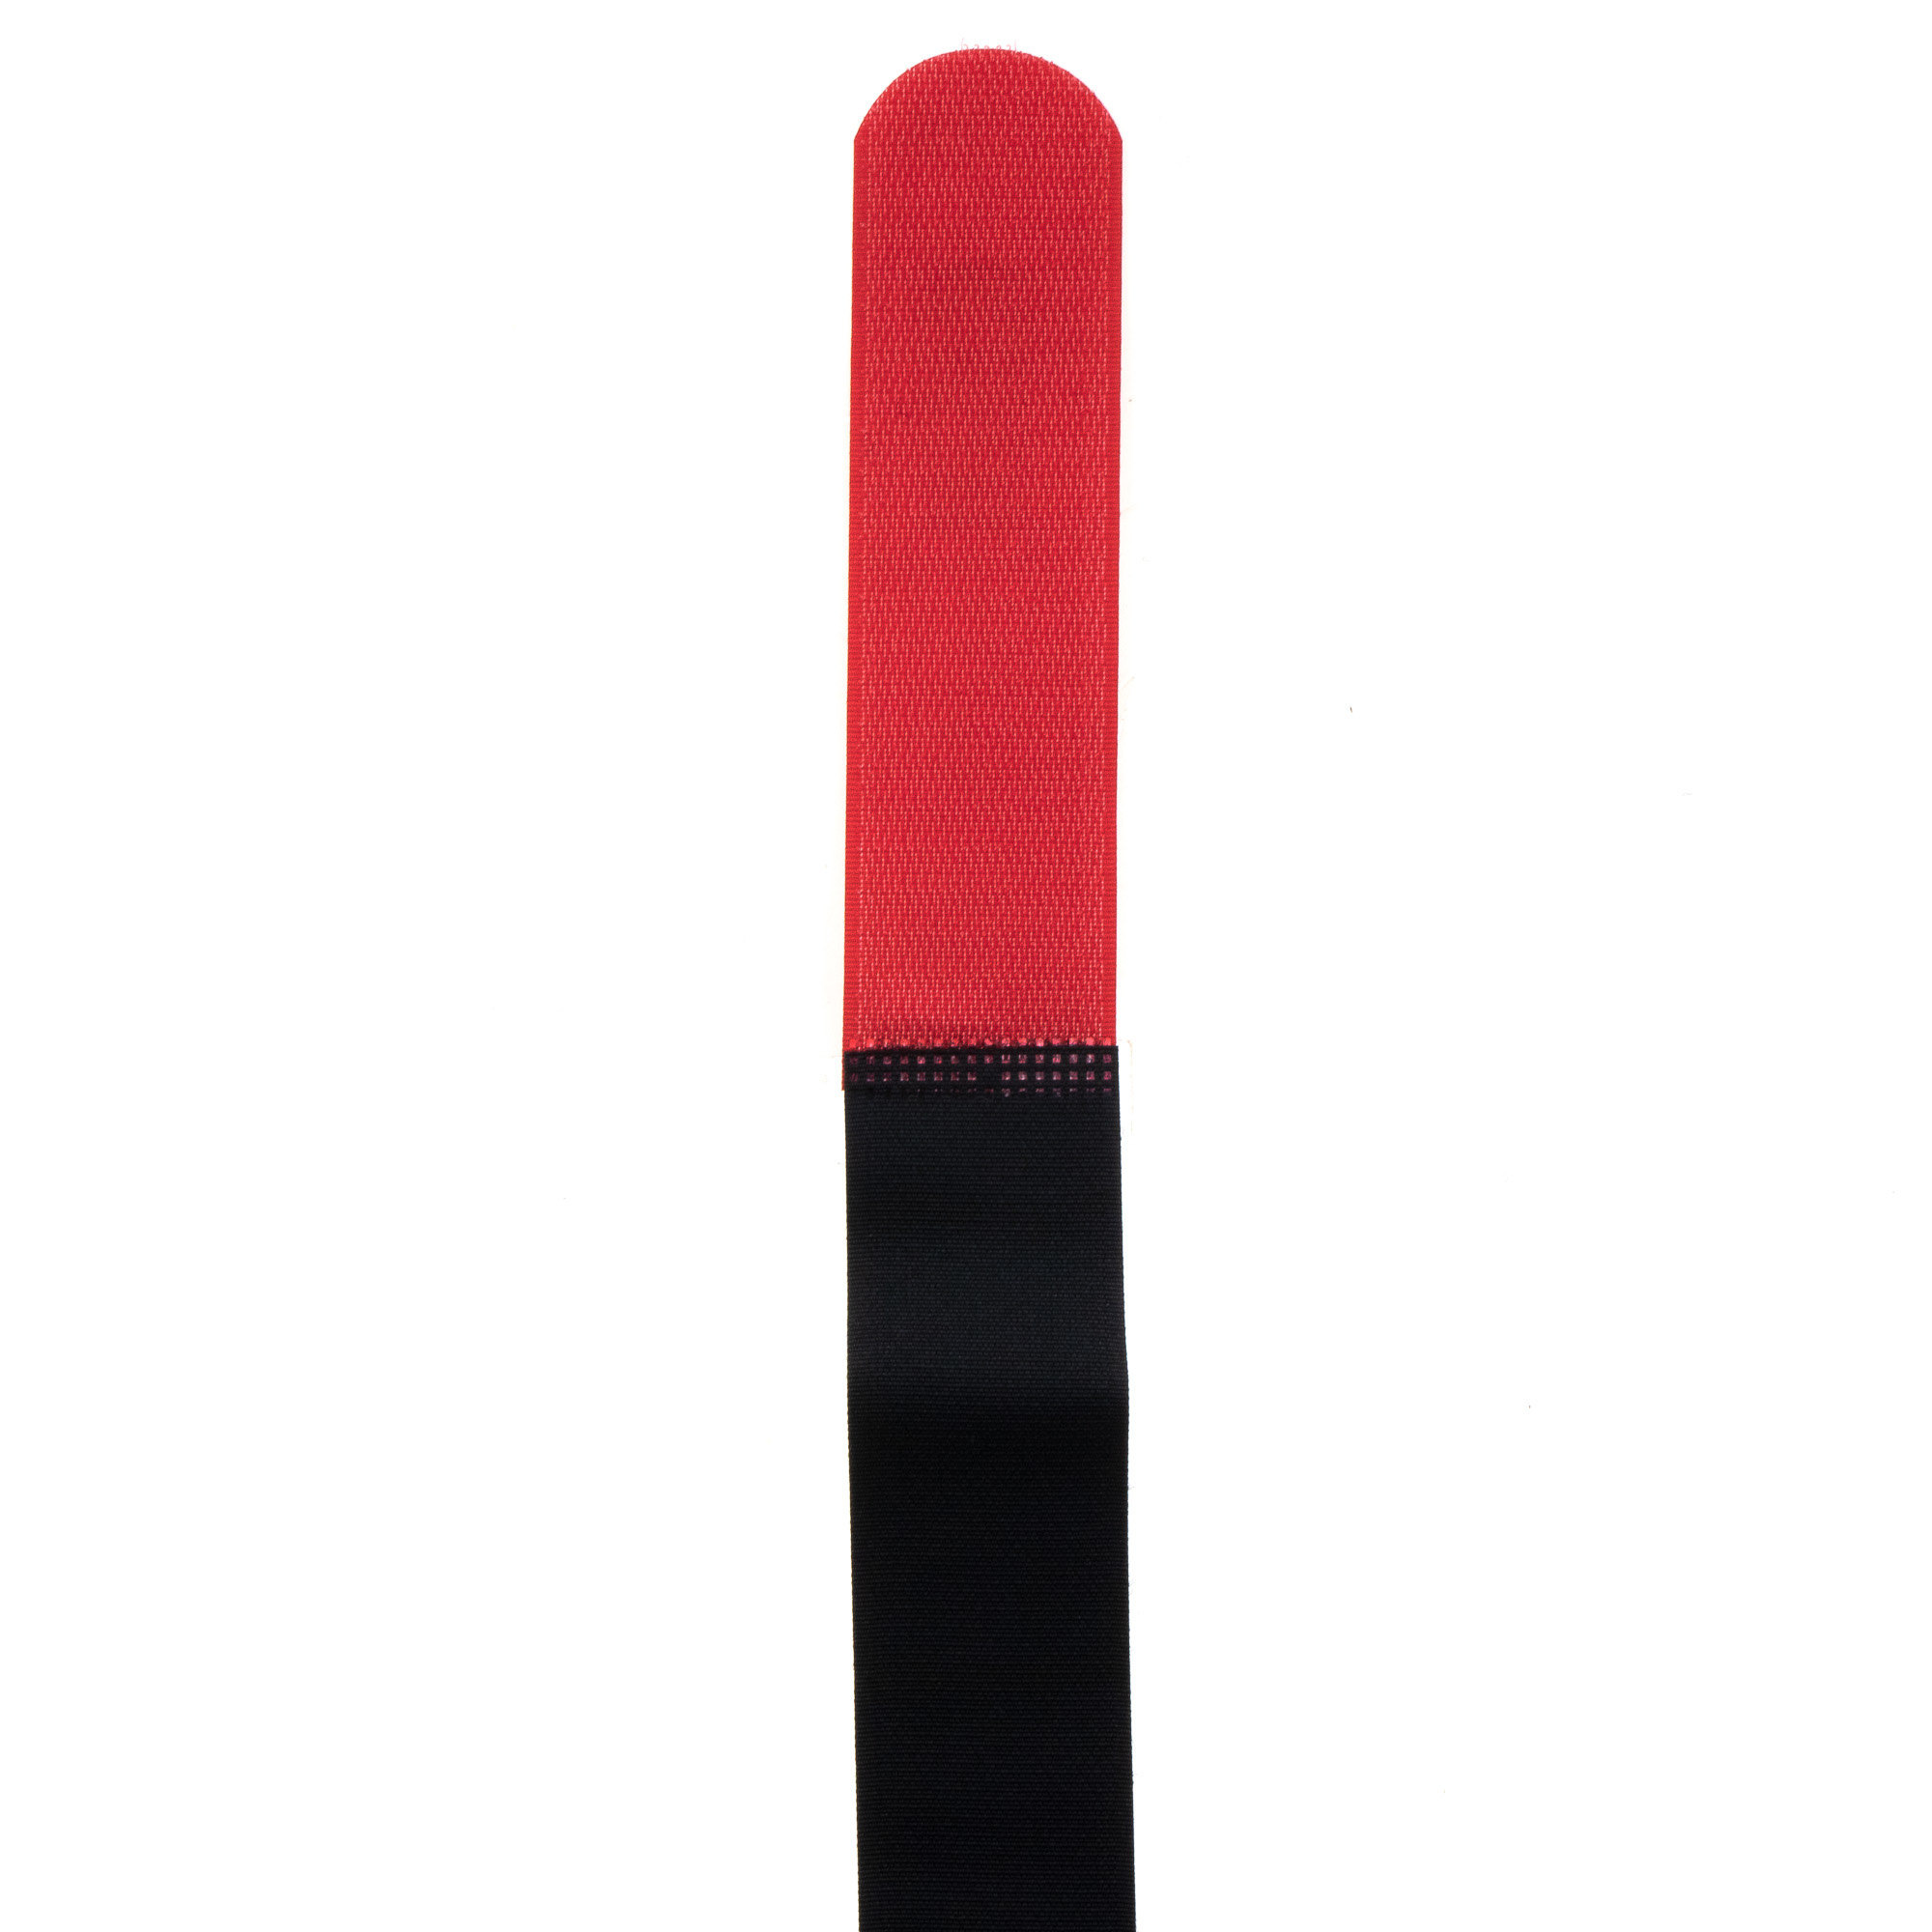 Hook-and-loop strap 800x38, black/red, crossed, 10PCS